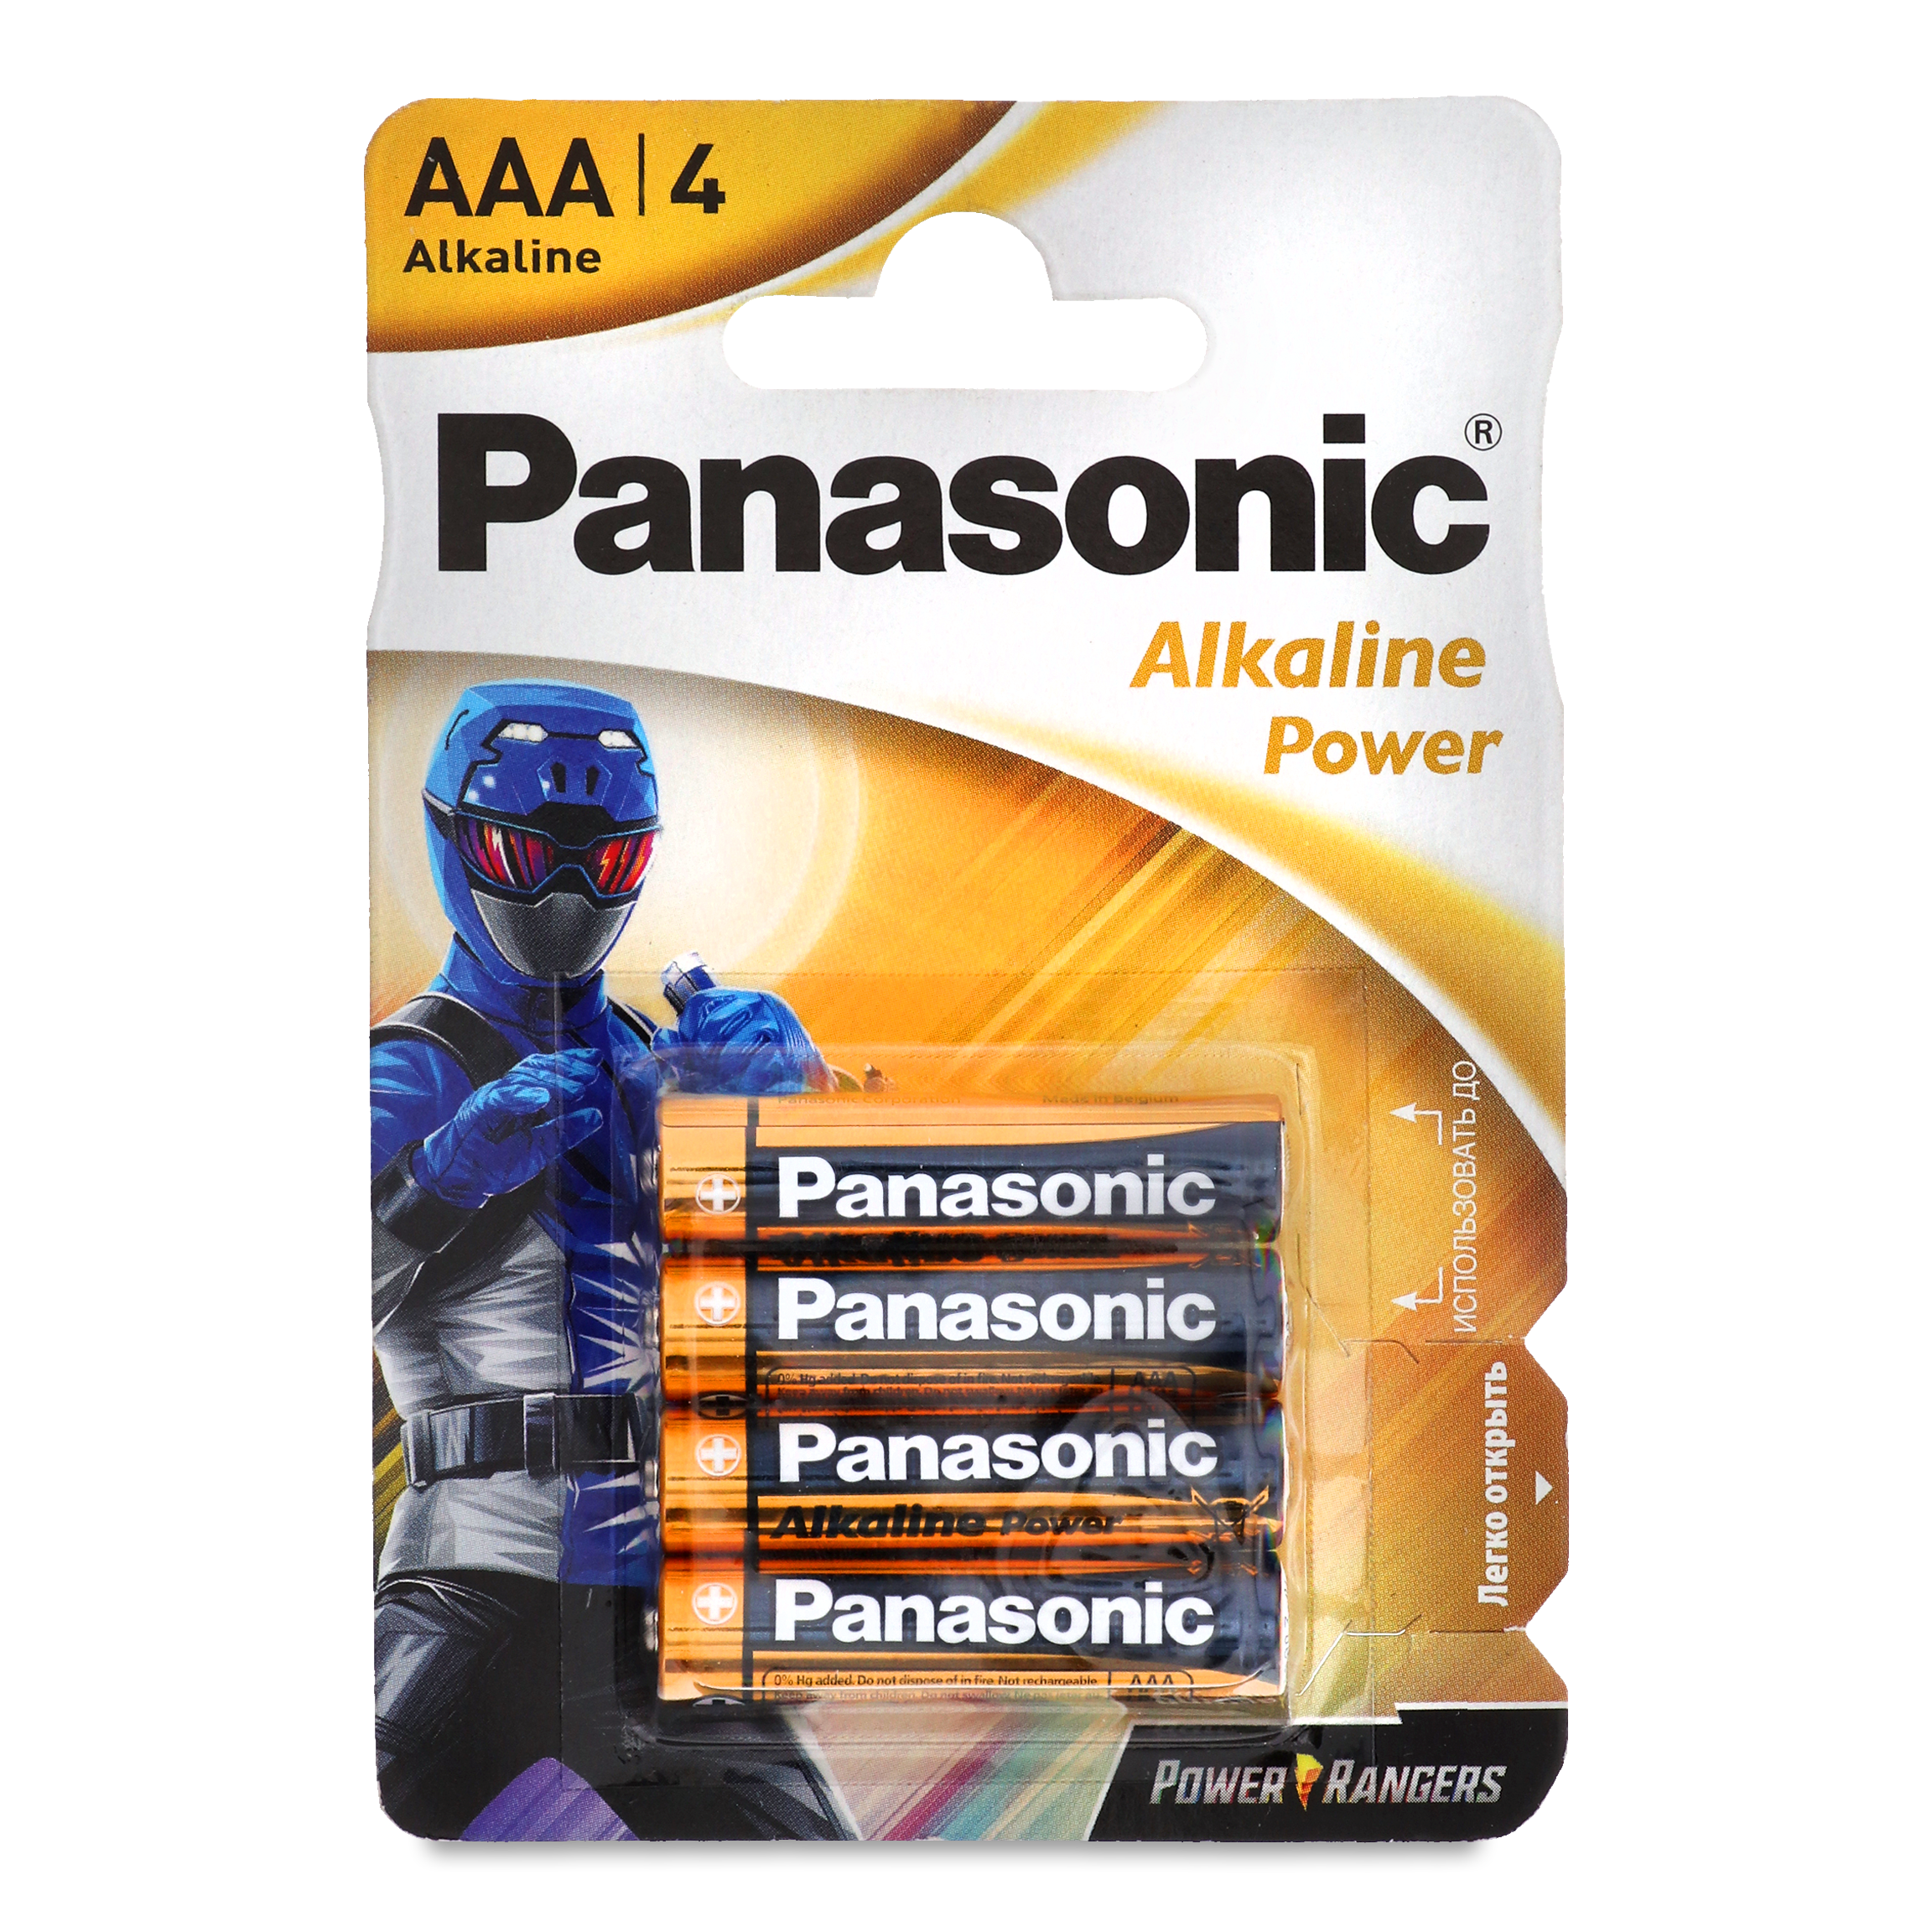 Panasonic Alkaline Power AAA Batteries 4pcs 2